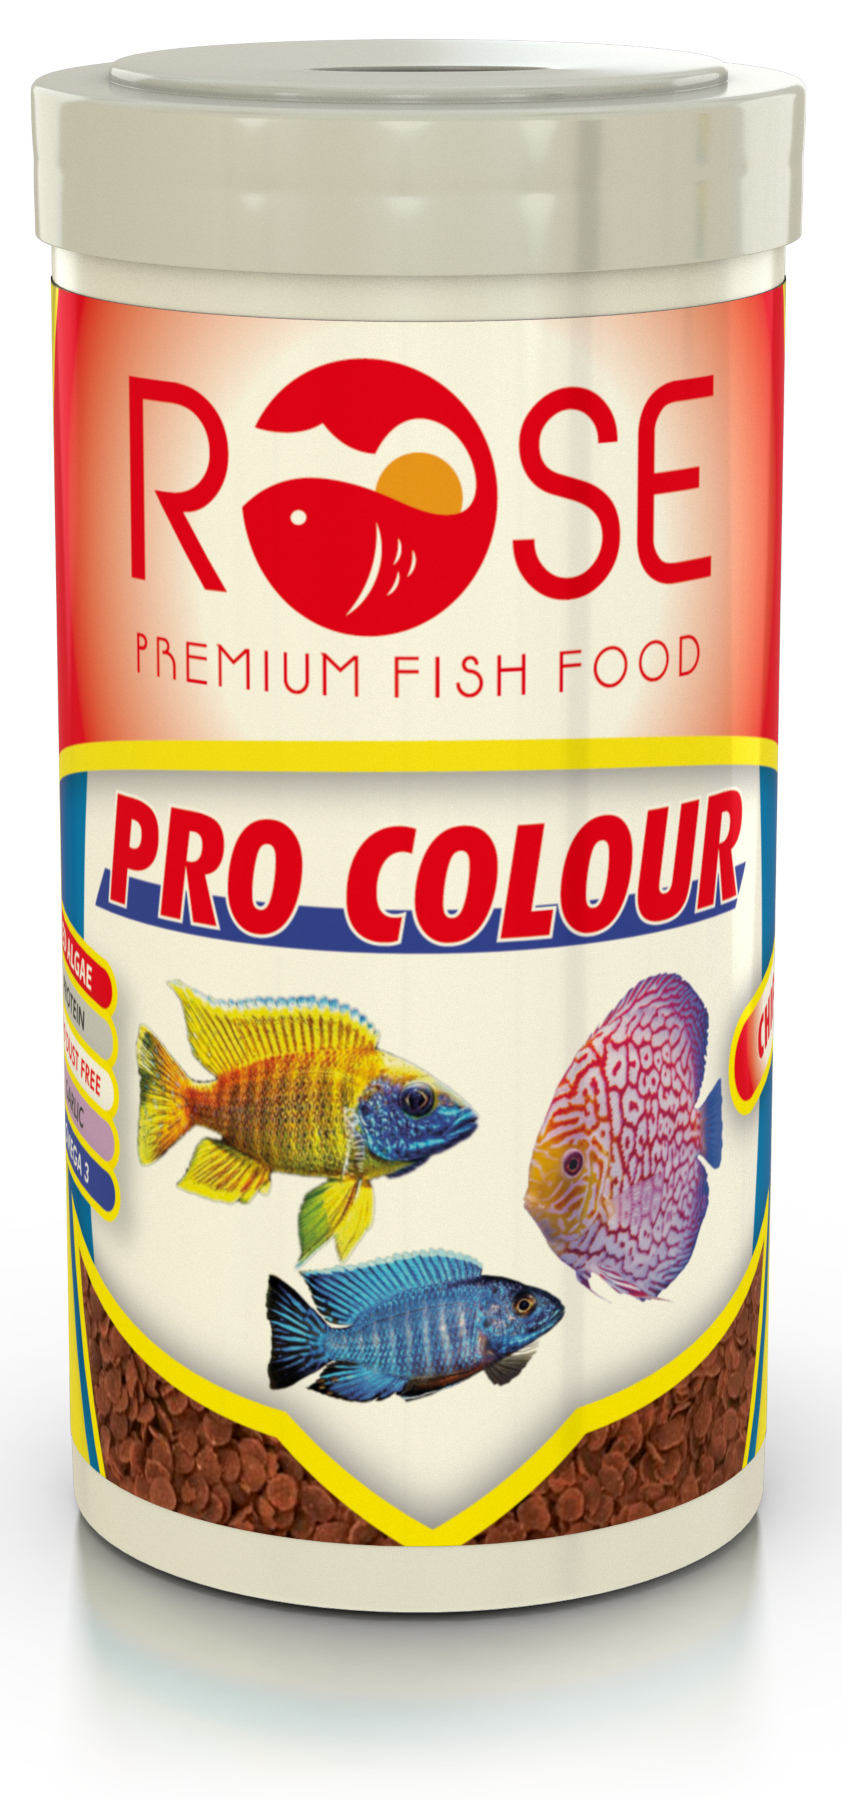 Rose Pro Colour 250 Ml Yüksek Protein Renklendirici Balık Yemi